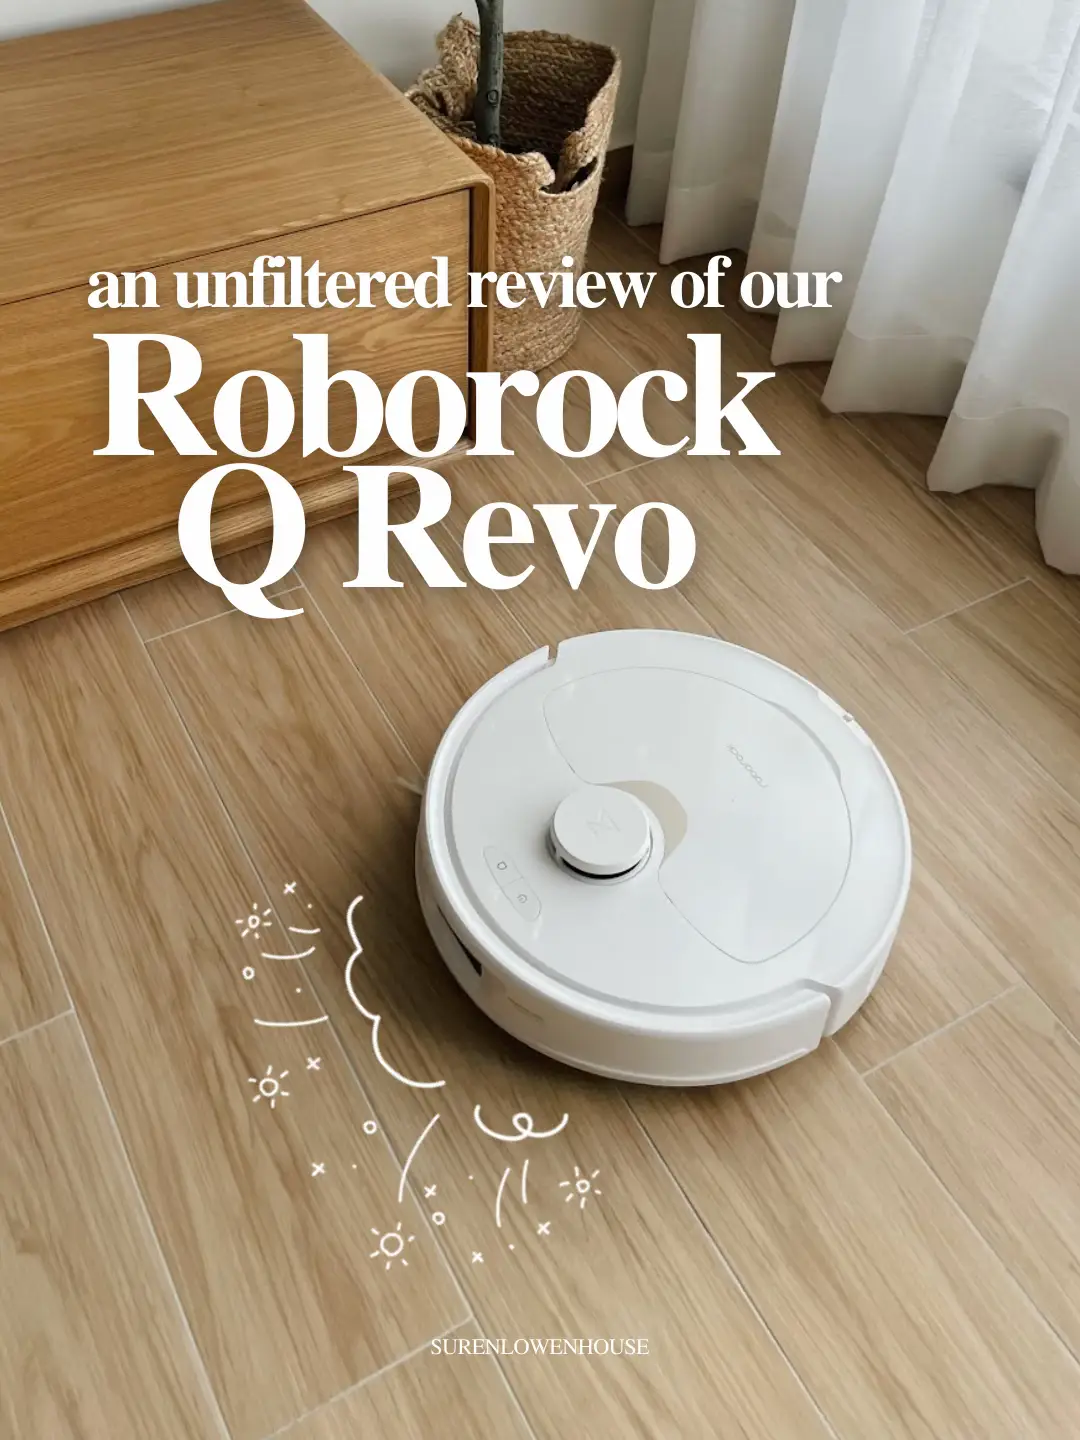 Roborock Q Revo